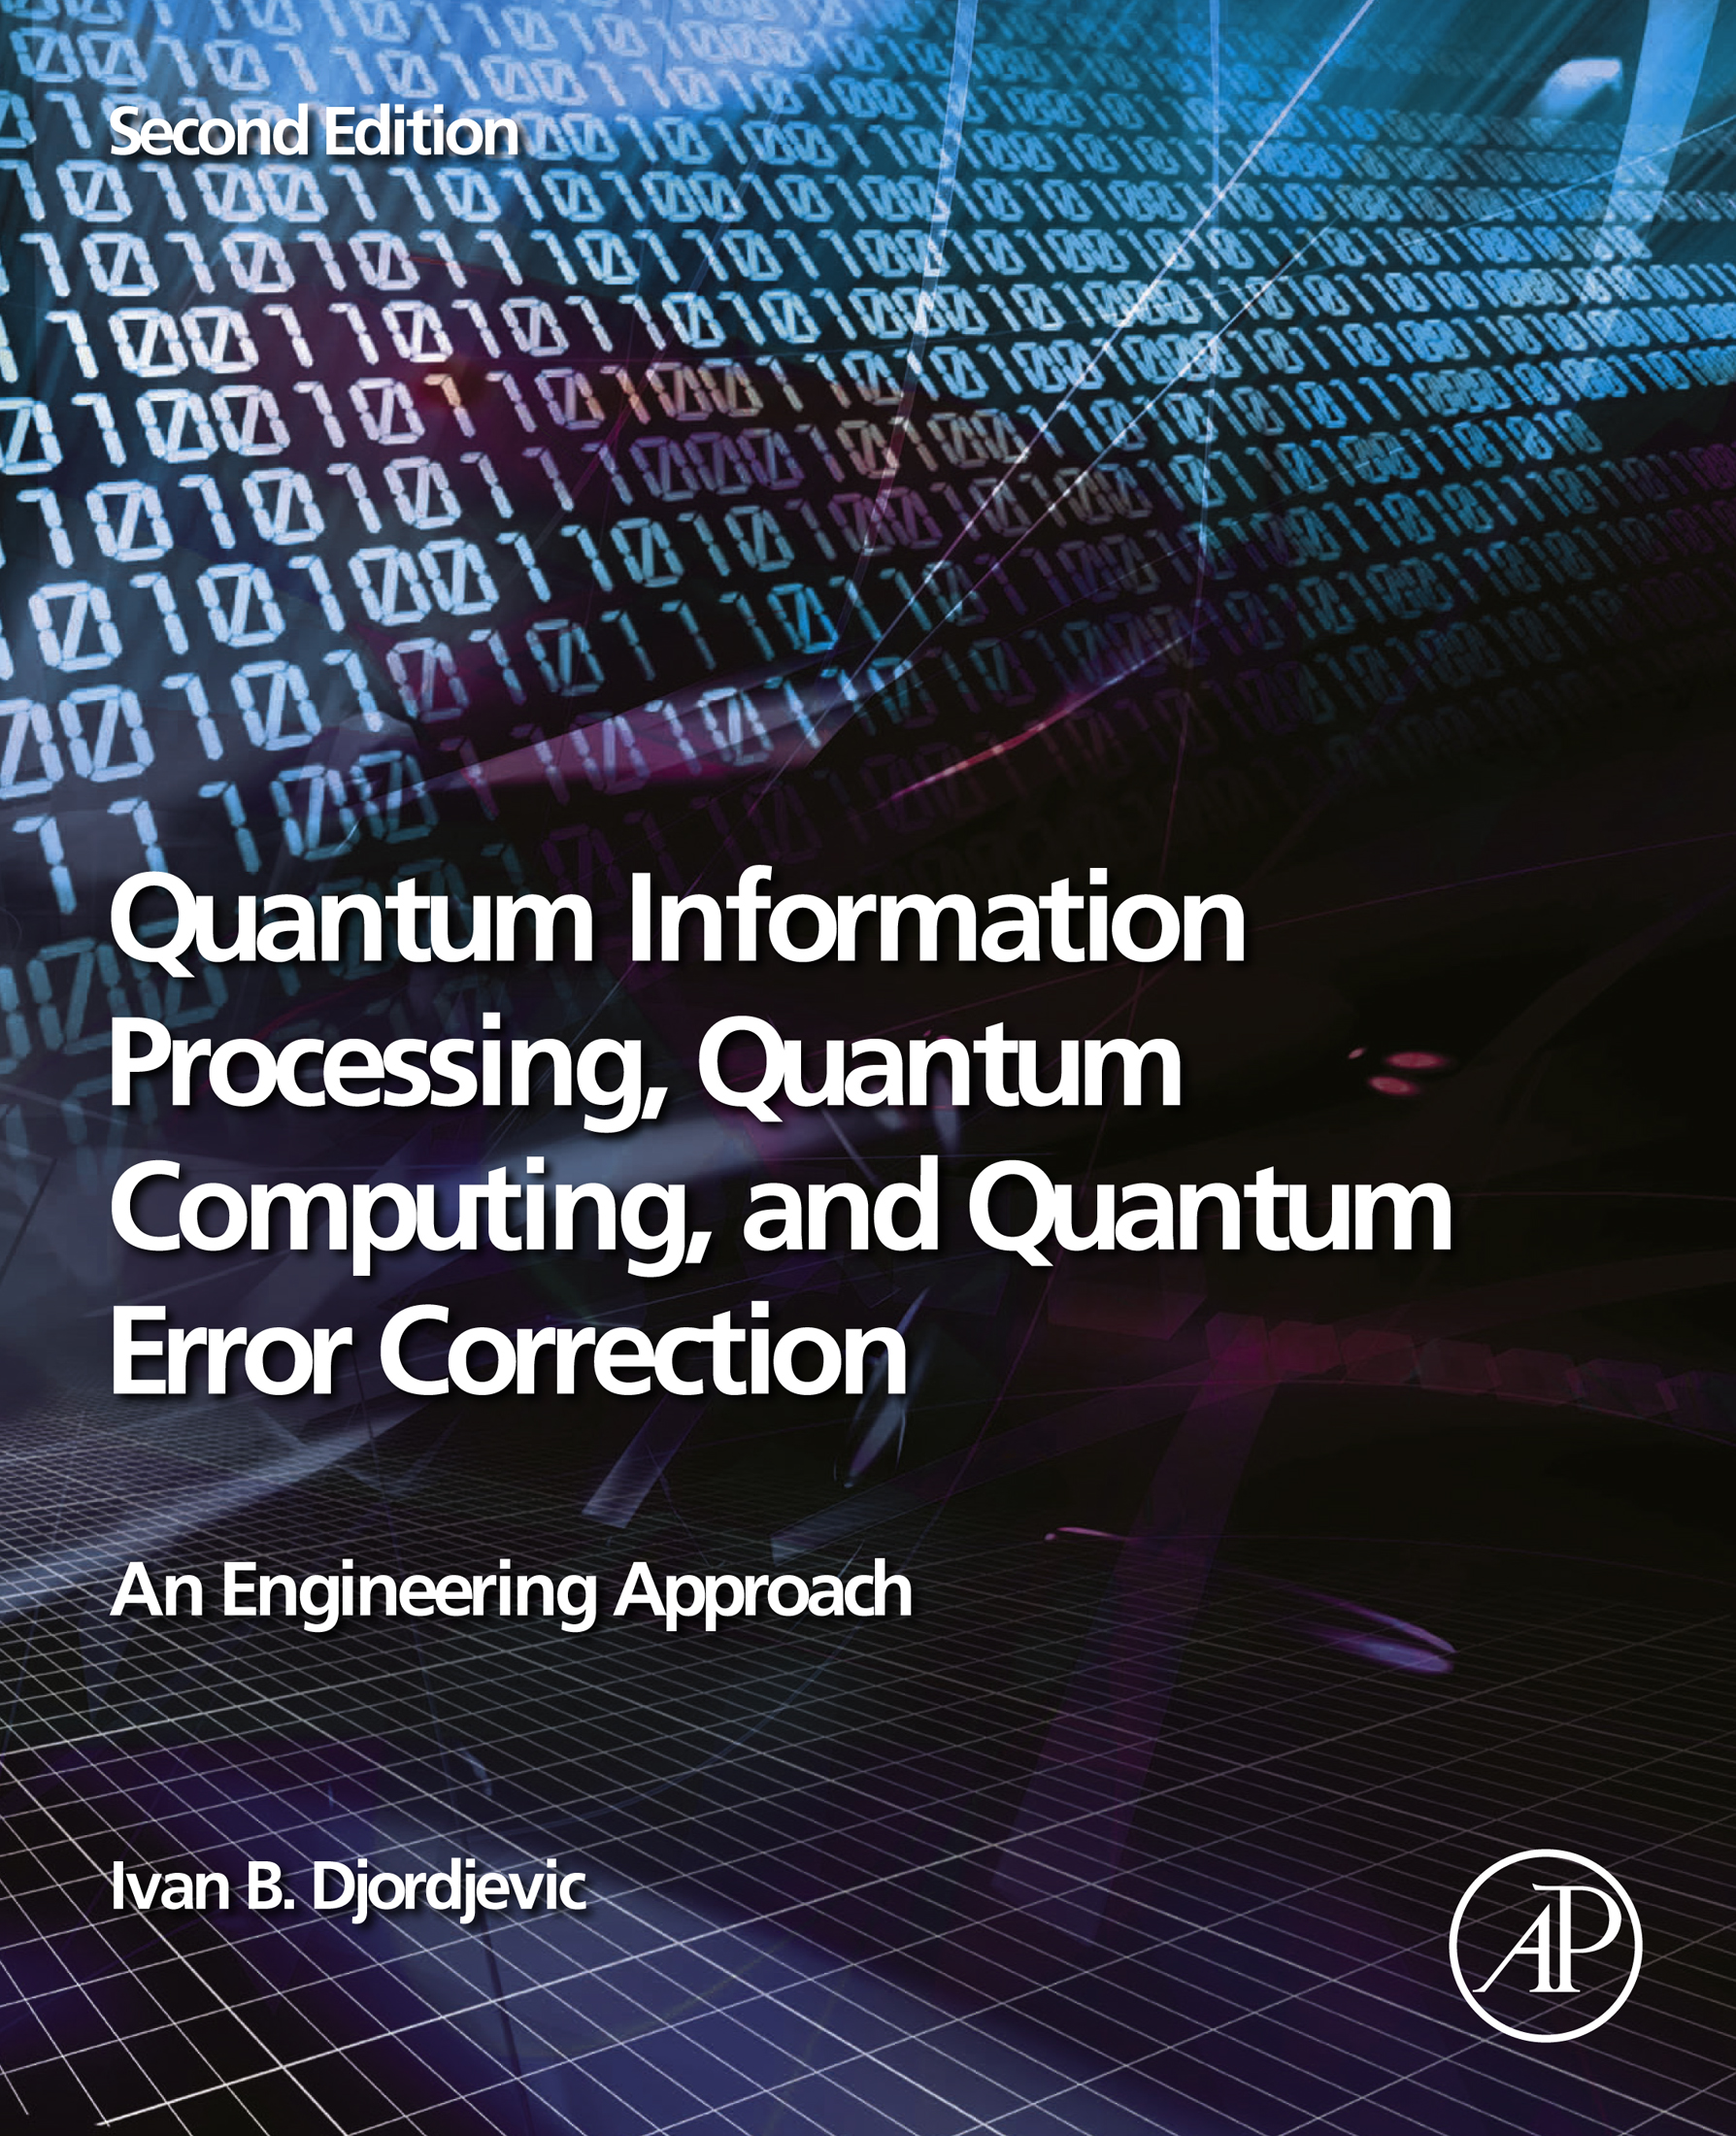 Quantum Information Processing Quantum Computing and Quantum Error Correction - photo 1